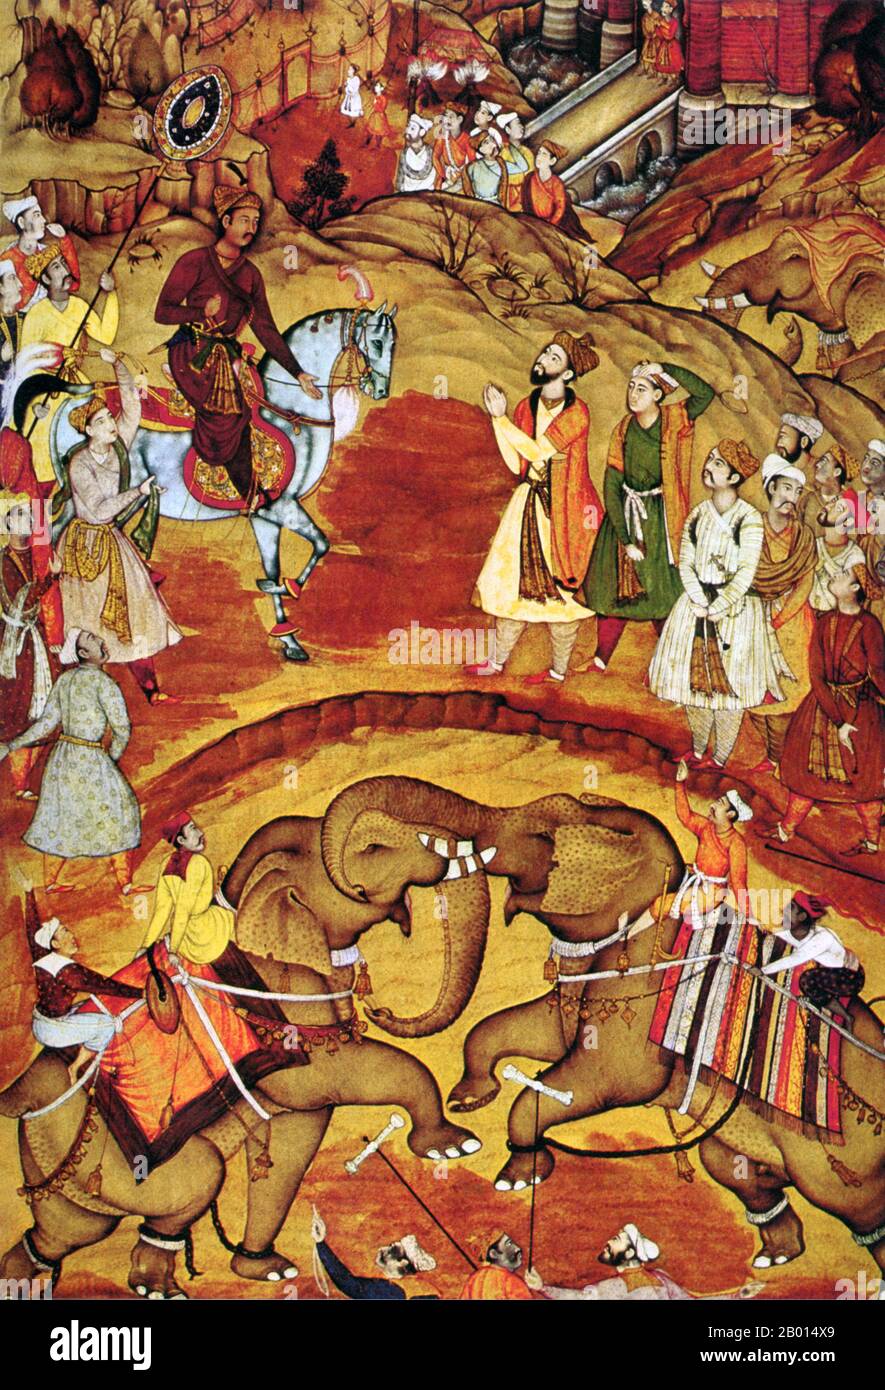 Indien: Kaiser Akbar erhält die Nachricht, dass sein zweiter Sohn geboren wurde, während er einen Elefantenkampf beobachtete, 1570. Jalaluddin Muhammad Akbar (15. Oktober 1542 - 13. Oktober 1605), auch bekannt als Shahanshah Akbar-e-Azam oder Akbar der große, war der dritte Moghul-Kaiser. Er war von Timurid Abstammung: Der Sohn von Humayun, und der Enkel von Babur, der Herrscher, der die Mogul-Dynastie in Indien gegründet. Am Ende seiner Herrschaft im Jahr 1605 die Mogulreich bedeckt die meisten der nördlichen und zentralen Indien und war eines der mächtigsten Reiche seines Alters. Stockfoto